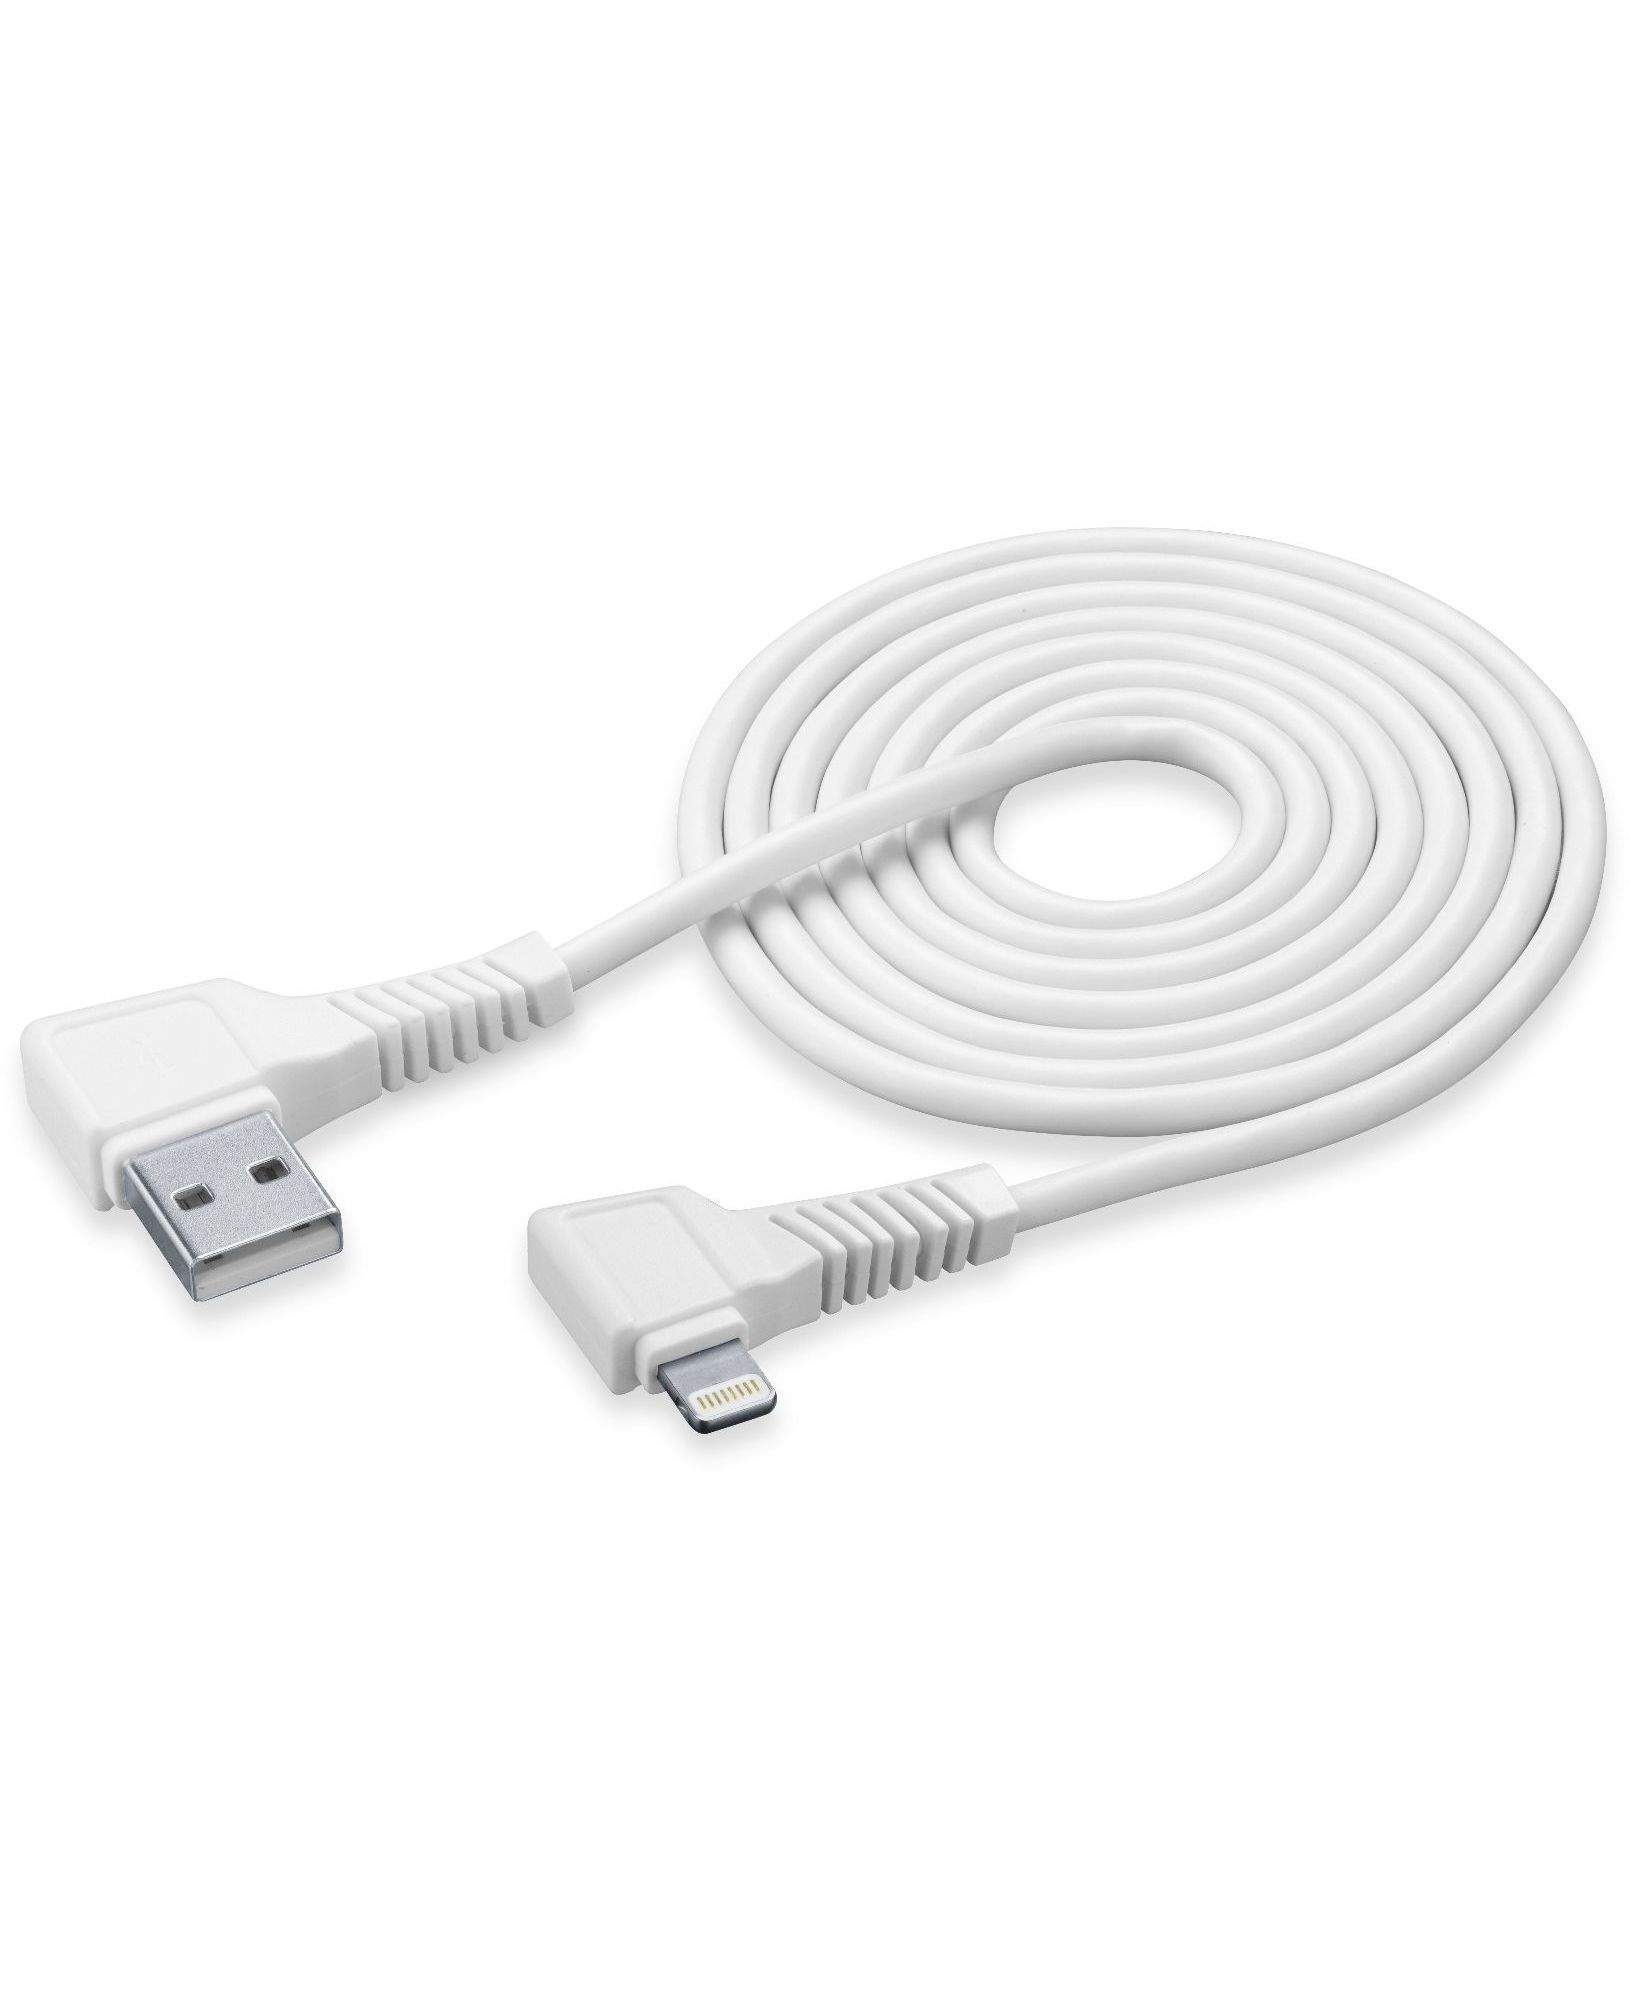 Usb kabel, Apple lightning connector hoek 2m, wit